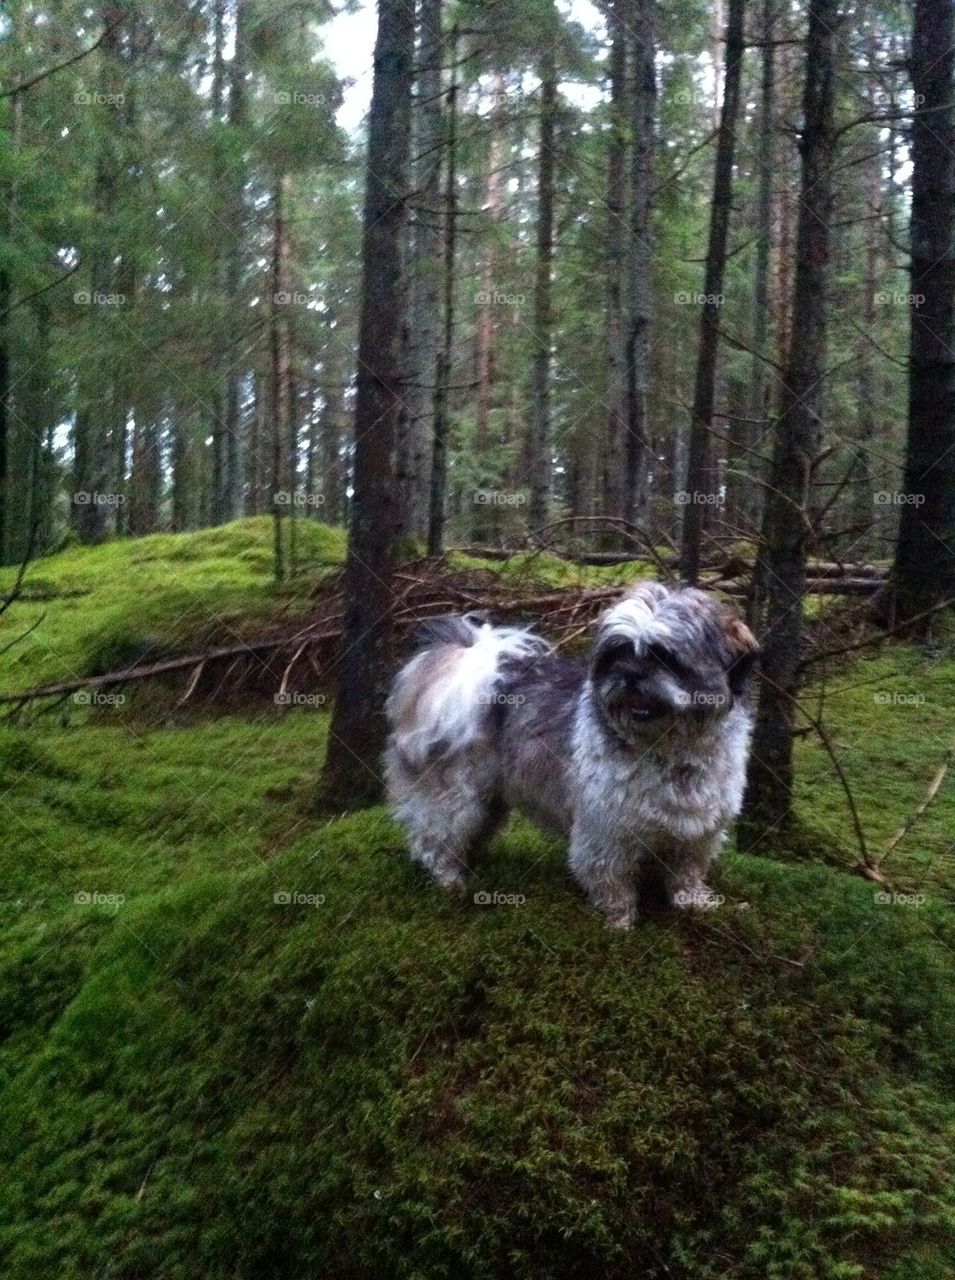 shi-tzu woods dog by flennstrom